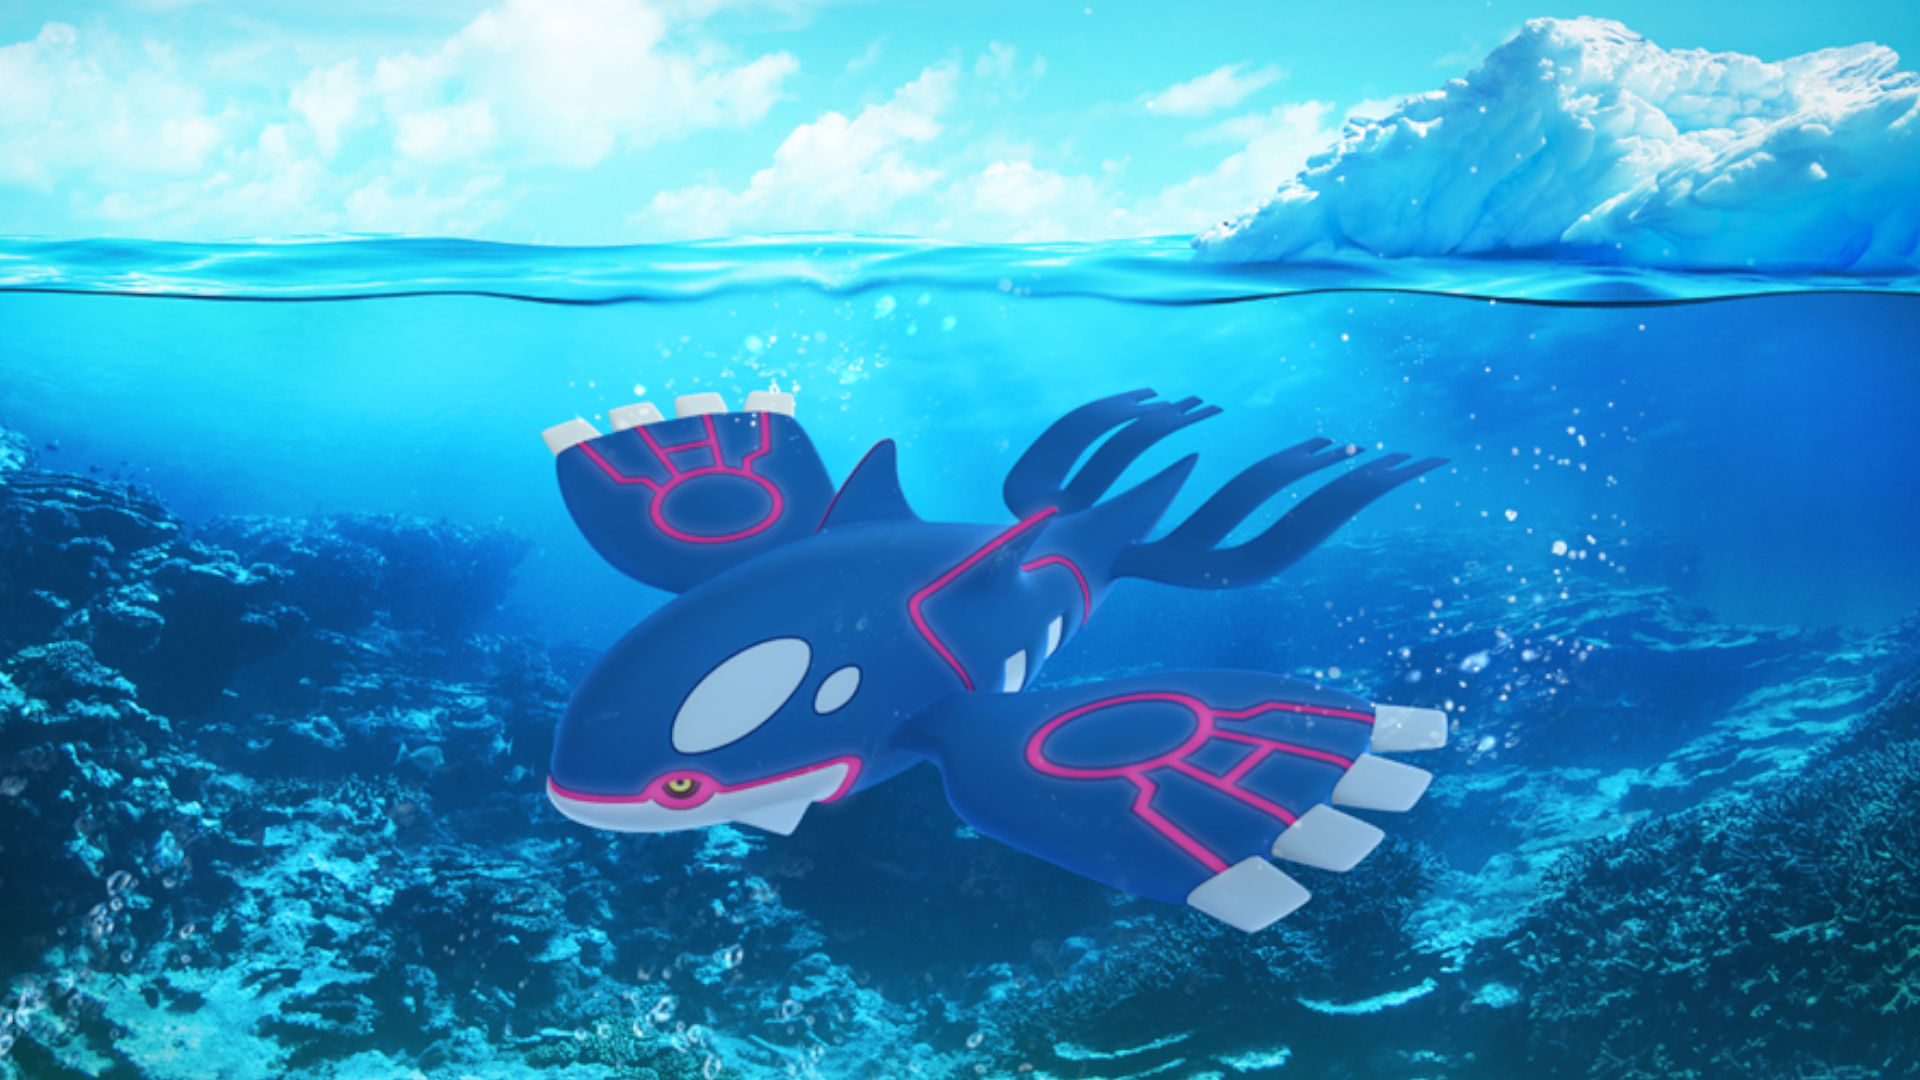 Pokémon: Water Type Pokémon  Pokemon, Anime, Pokemon pictures